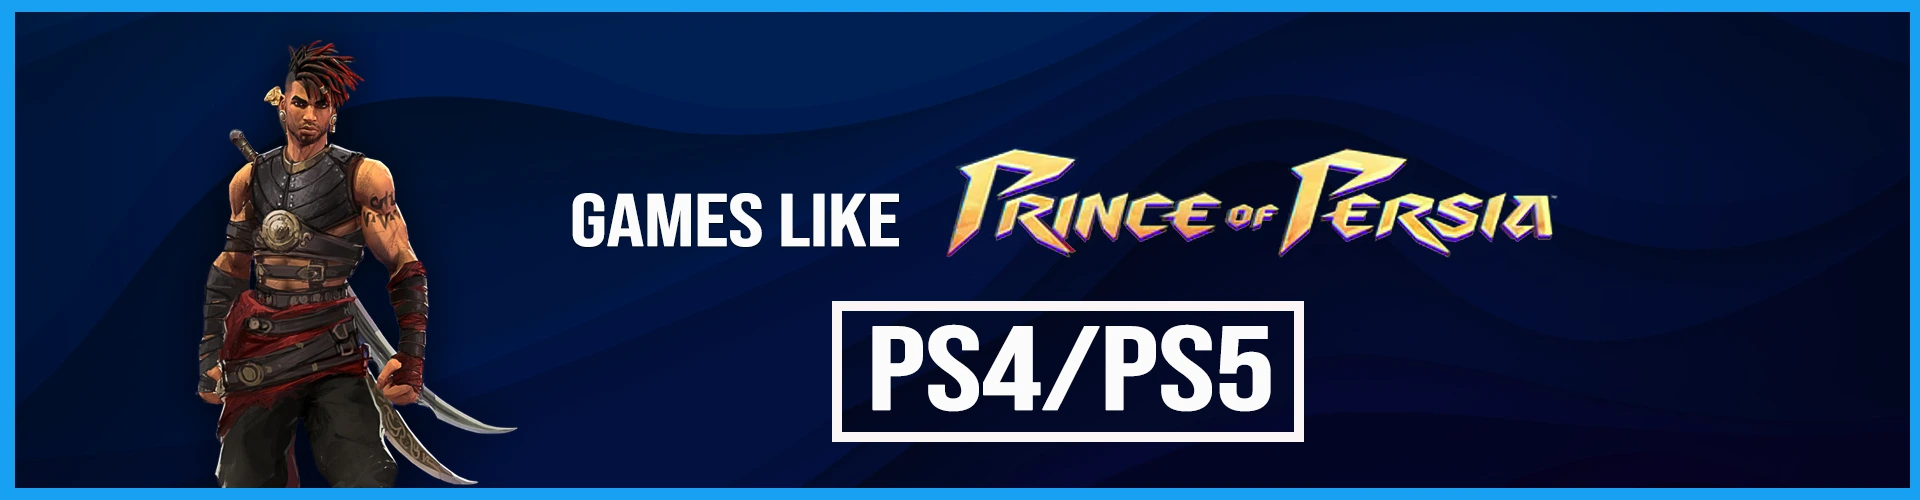 Los Mejores Juegos Como Prince of Persia en PS4/PS5